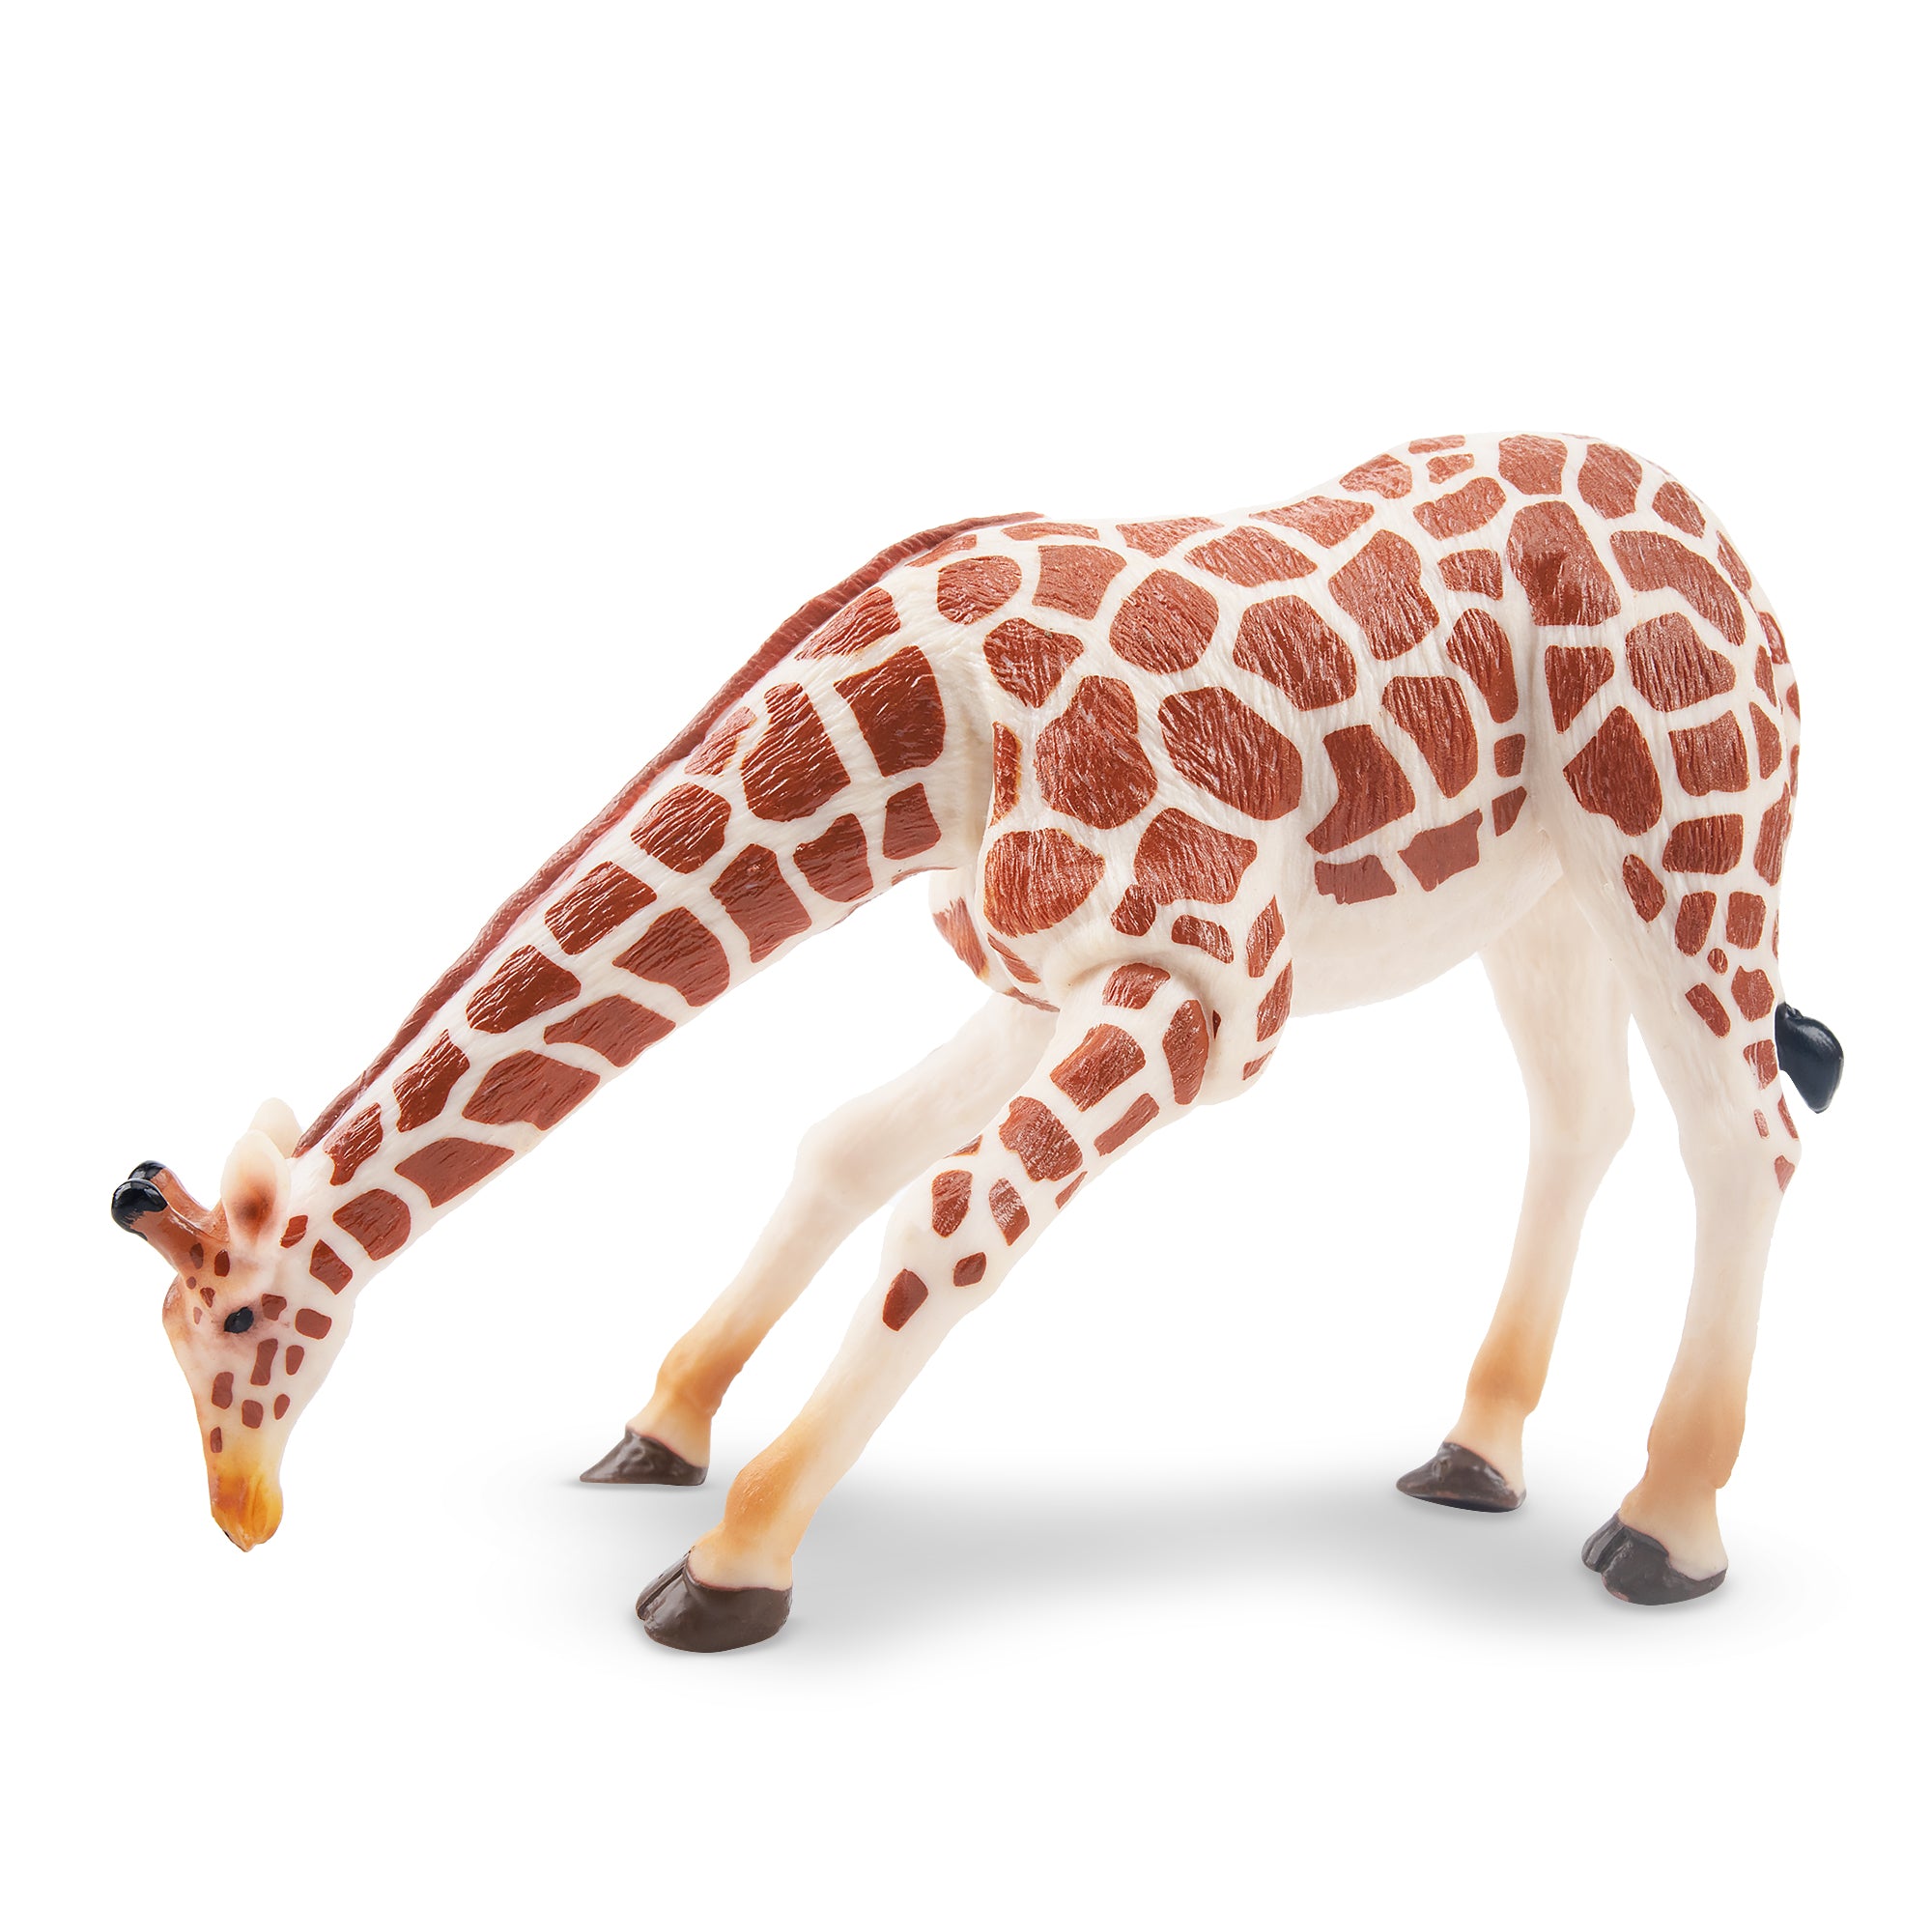 Toymany Grazing Giraffe Figurine Toy